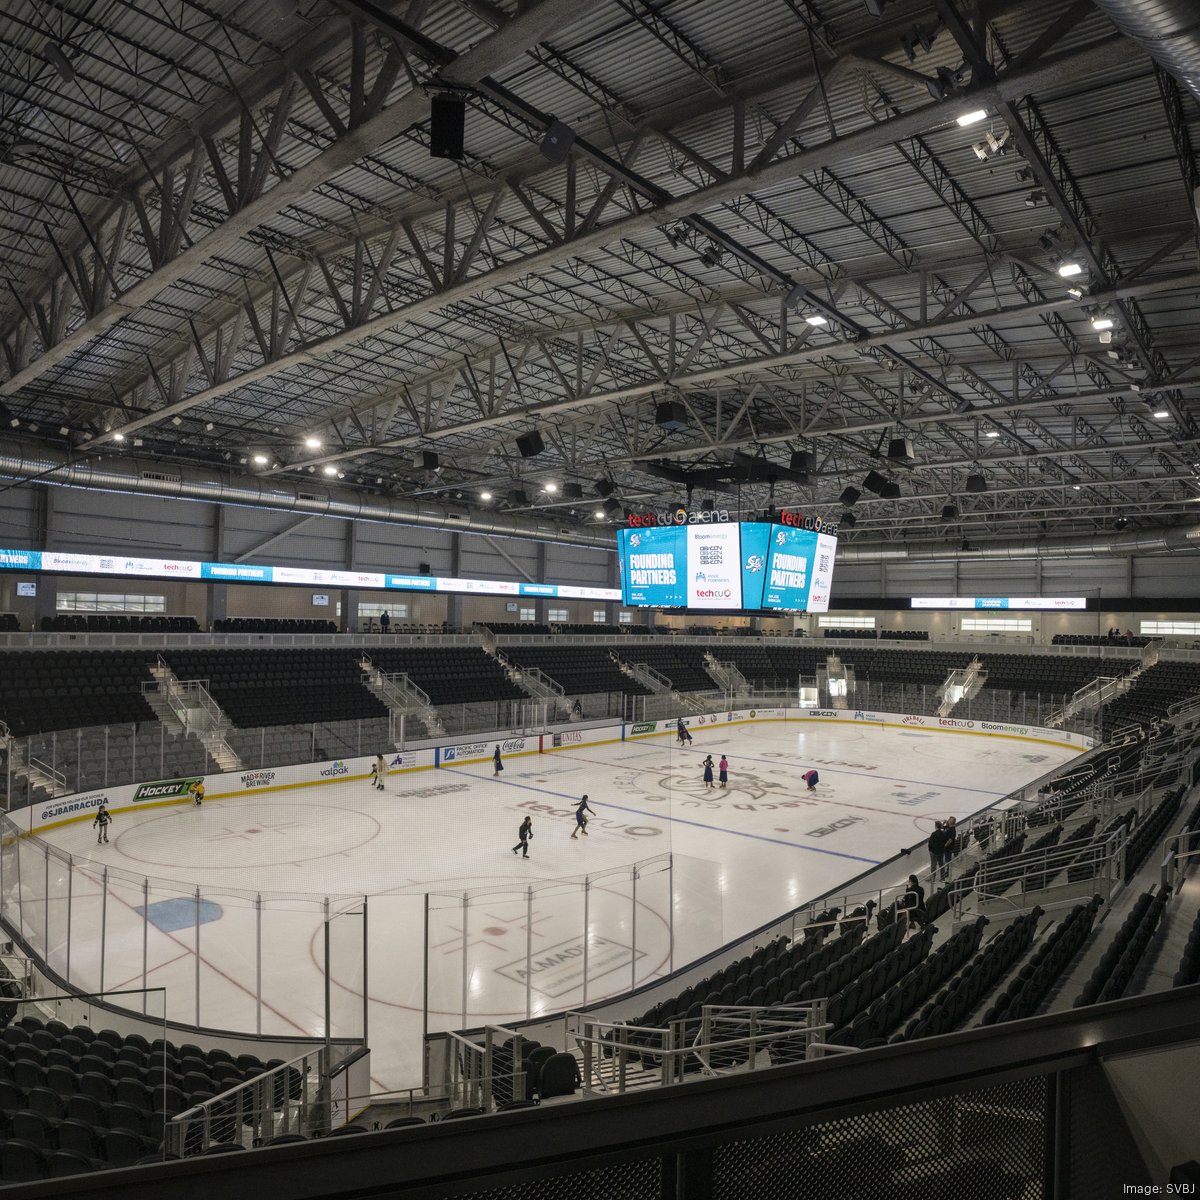 NHL: San Jose Sharks unveil new look at Tech CU Arena